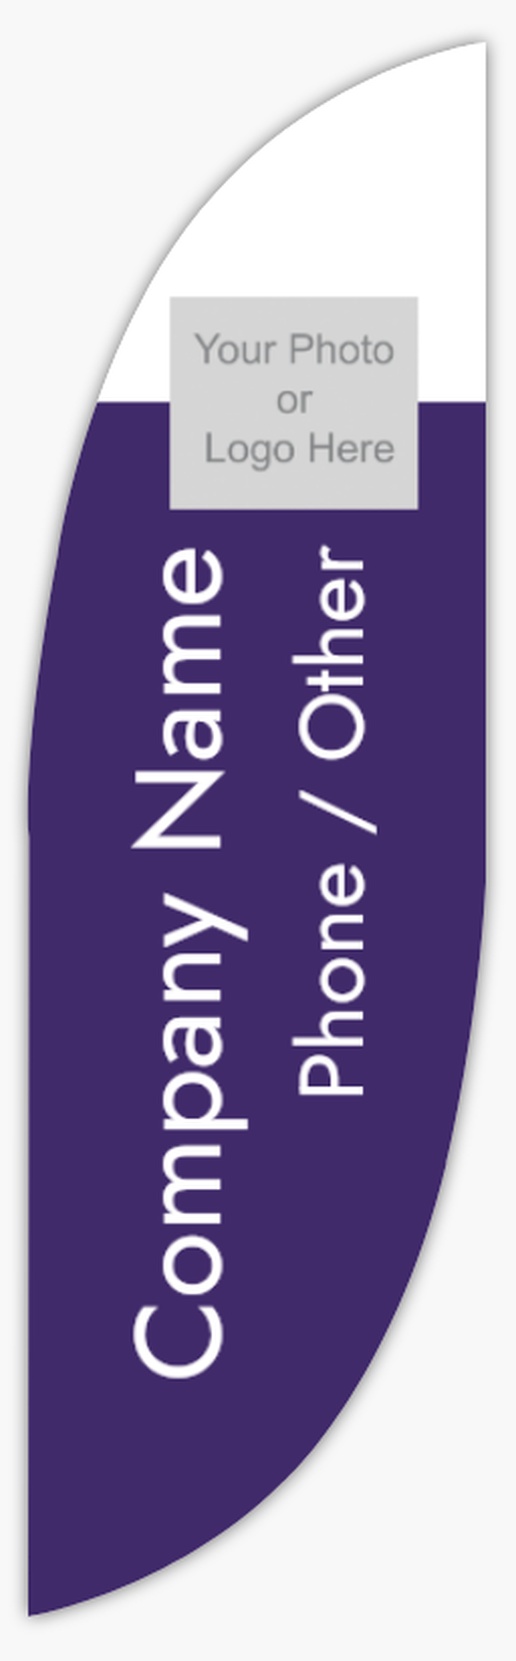 A czysty temiz purple white design with 1 uploads